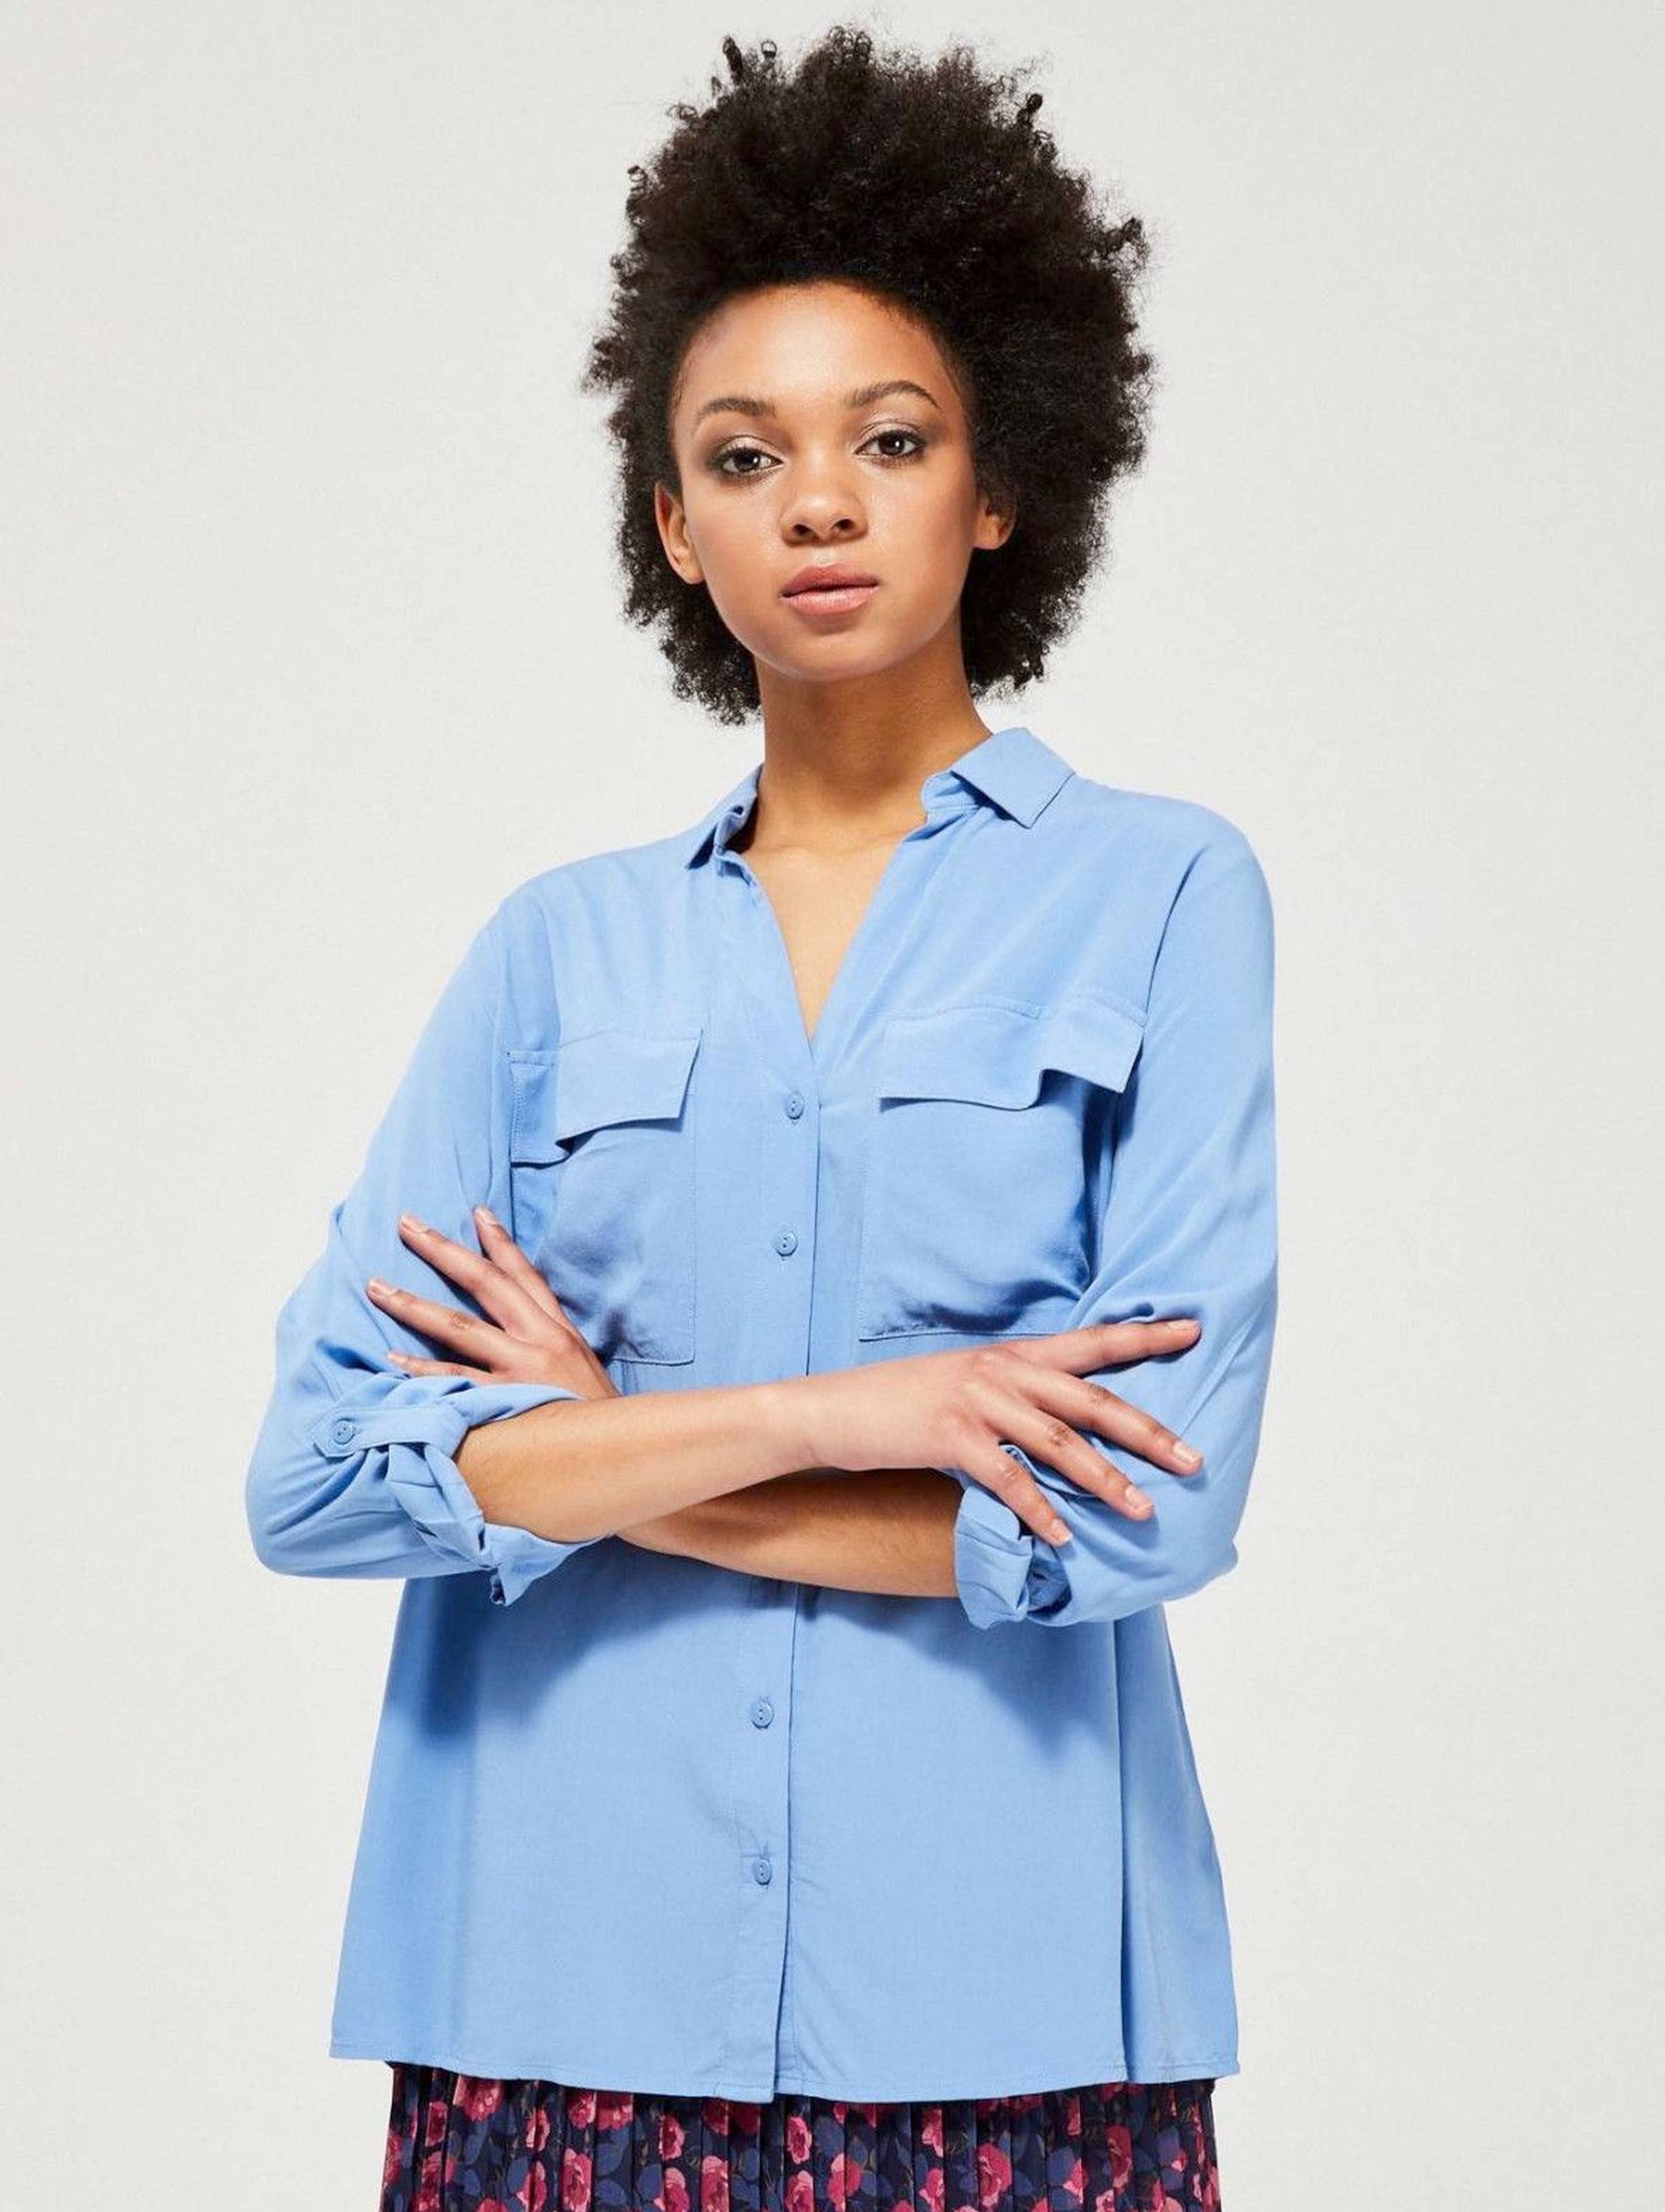 Niebieska rozpinana koszula damska z kieszeniami